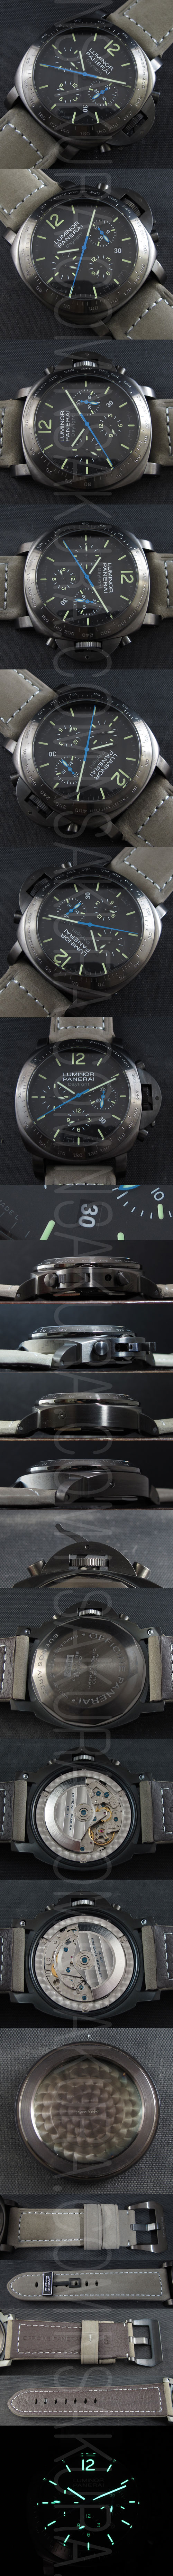 パネライスーパーコピー ルミノール デイライトPAM00363メンズ腕時計